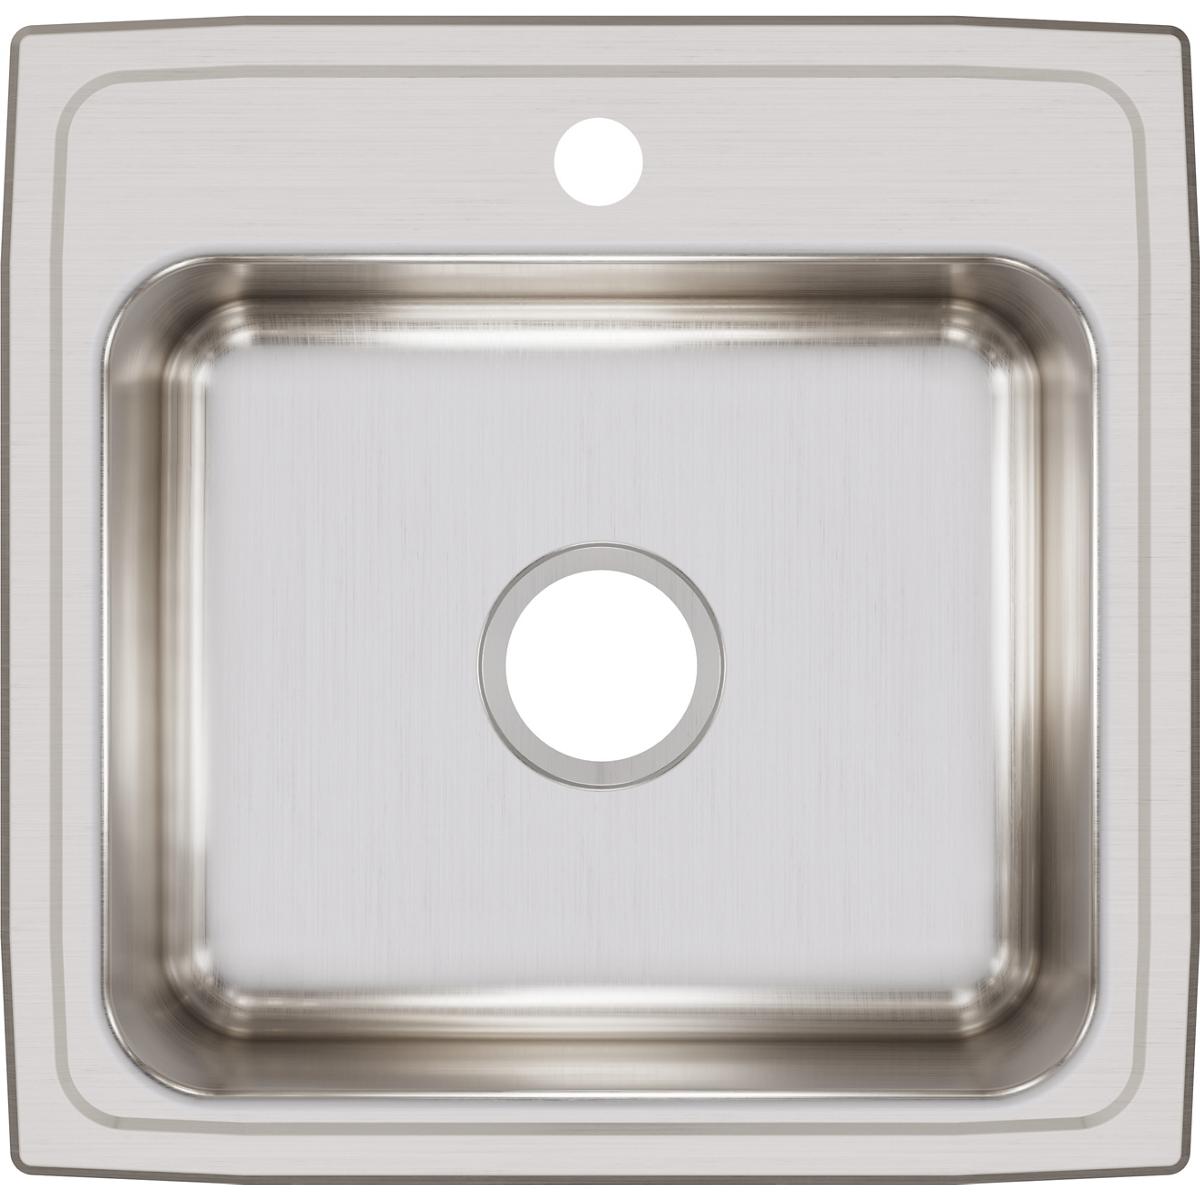 Elkay Lustertone Classic Stainless Steel 19-1/2" x 19" x 7-1/2" Single Bowl Drop-in Sink